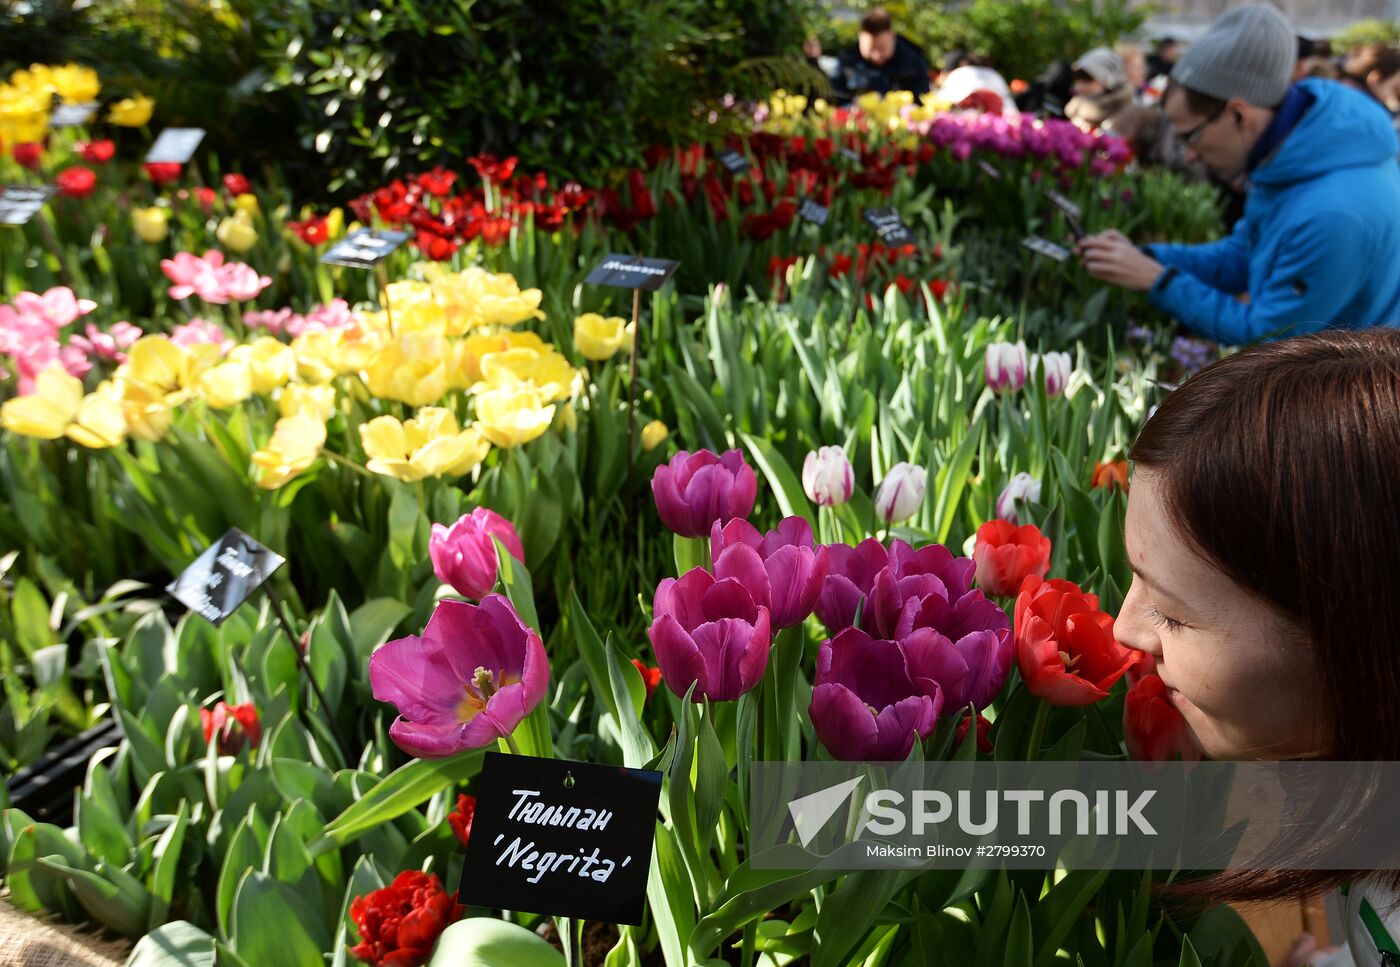 Second Annual Exhibition "Rehearsal of Spring" in Aptekarsky Ogorod garden